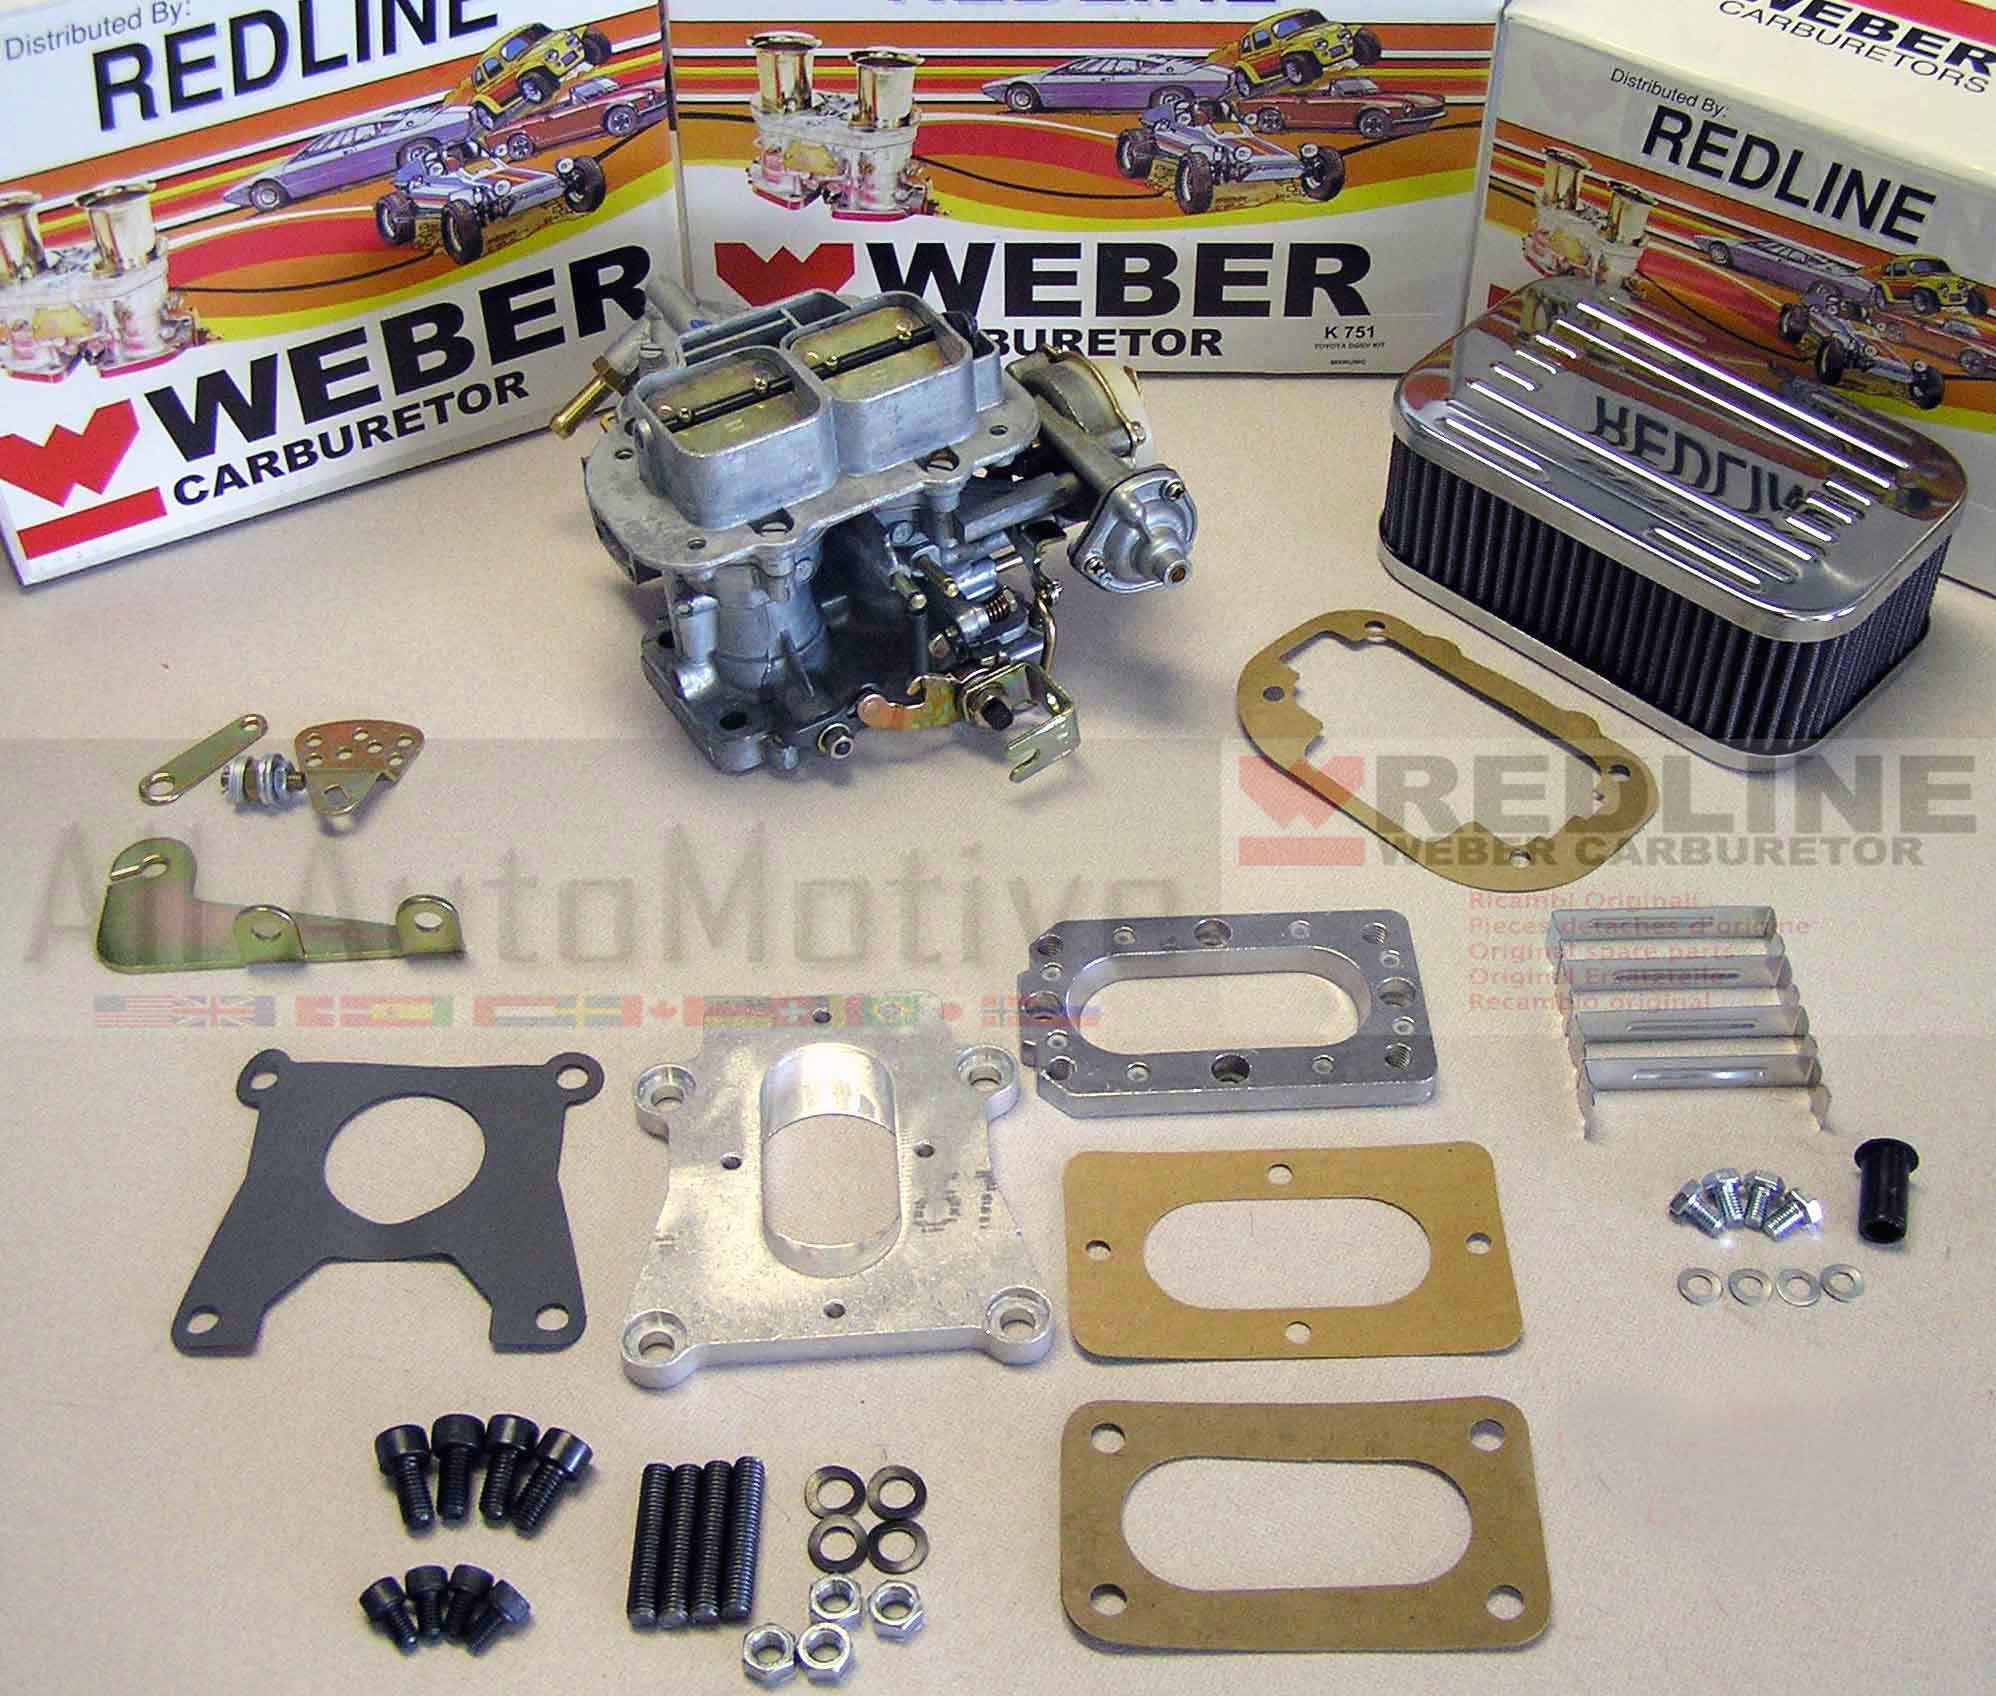 Weber carburetor toyota tercel